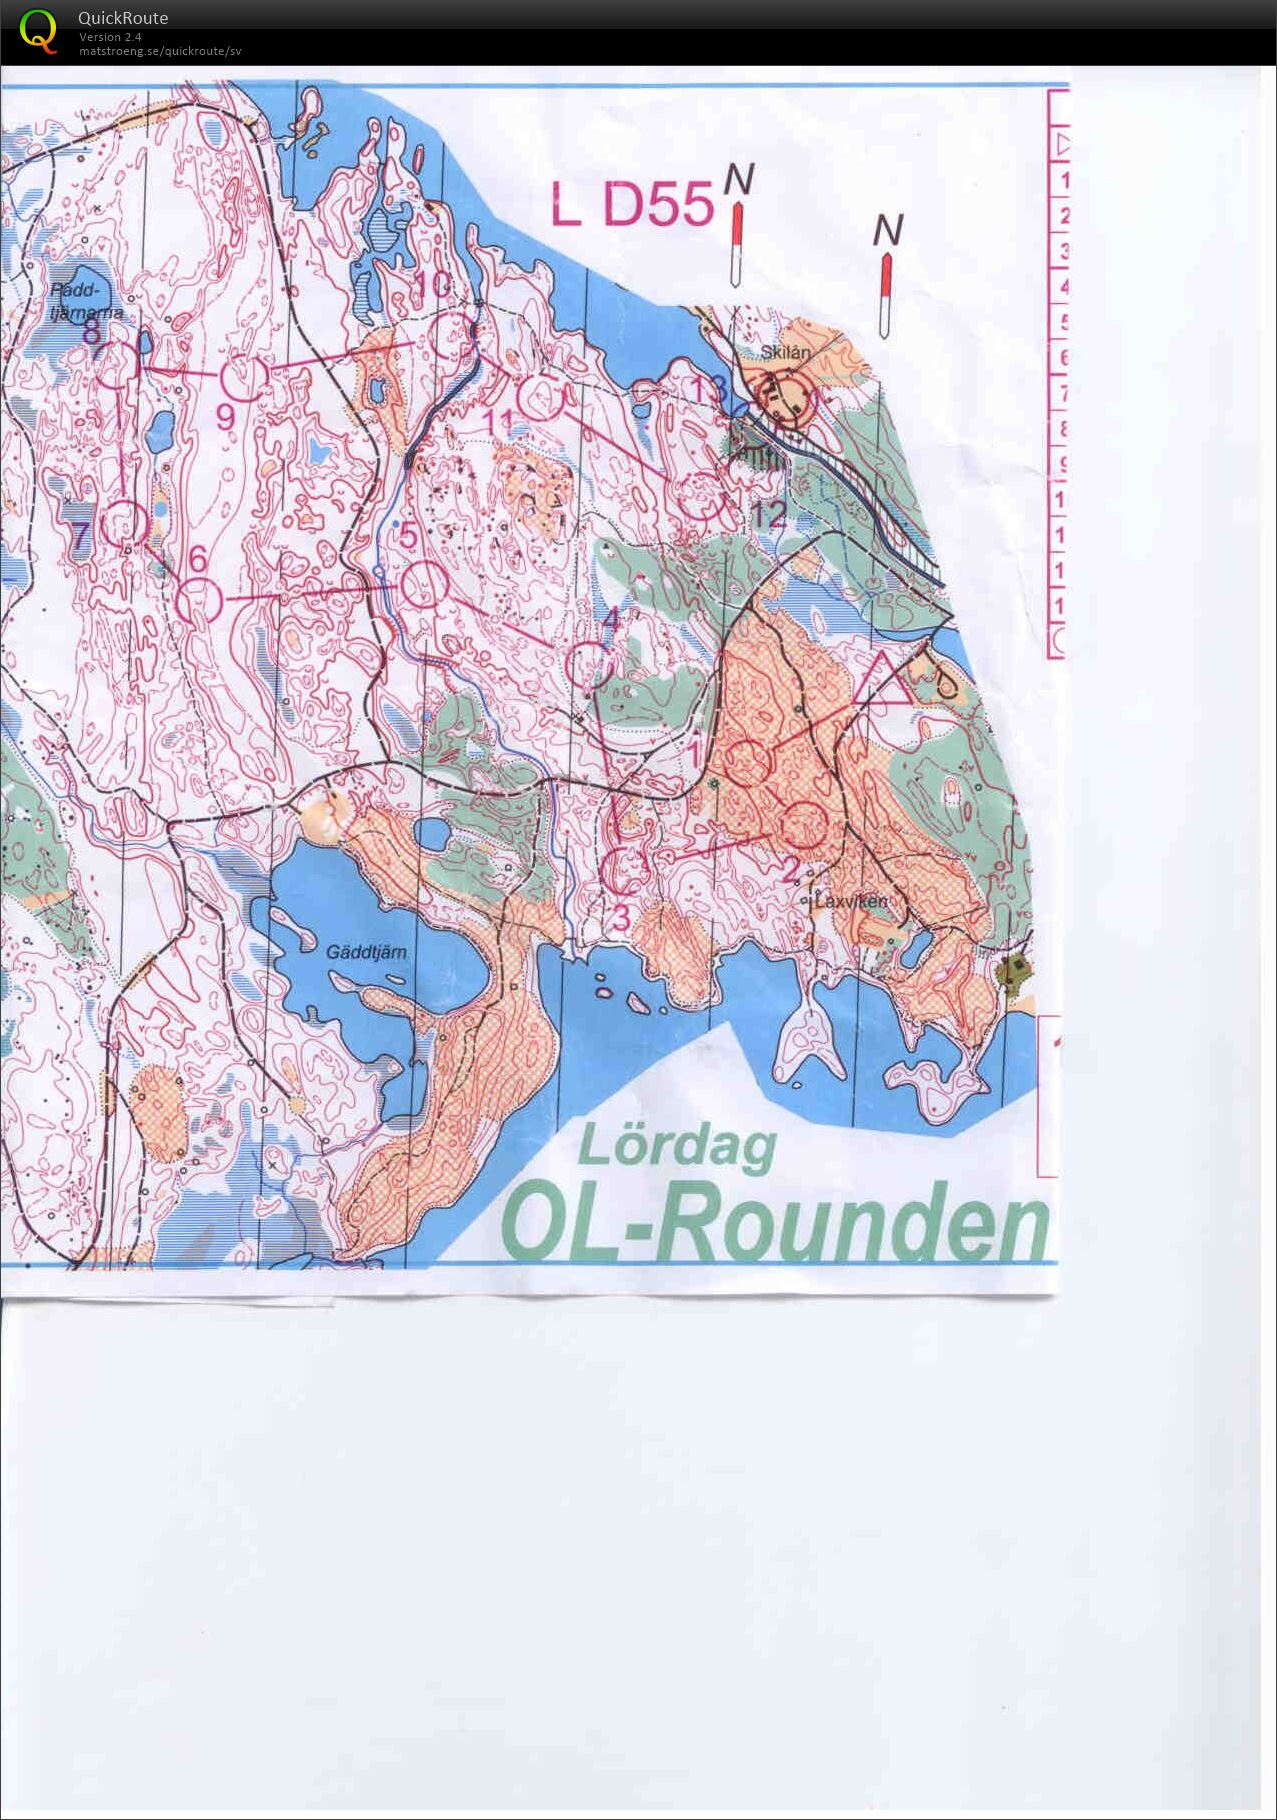 OL-rounden lång (15-08-2015)